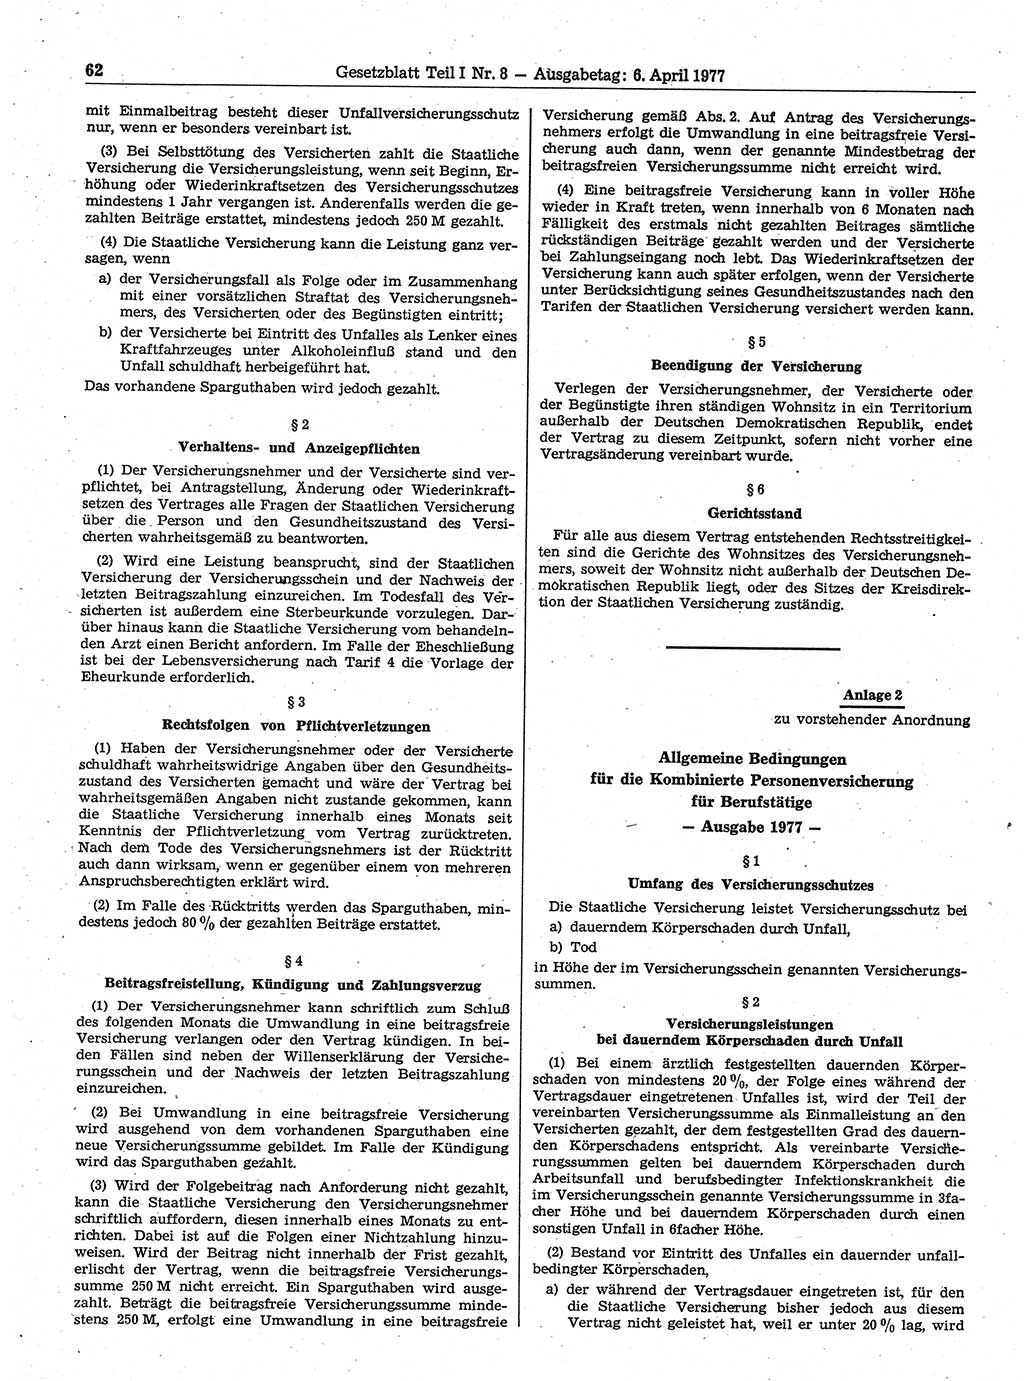 Gesetzblatt (GBl.) der Deutschen Demokratischen Republik (DDR) Teil Ⅰ 1977, Seite 62 (GBl. DDR Ⅰ 1977, S. 62)